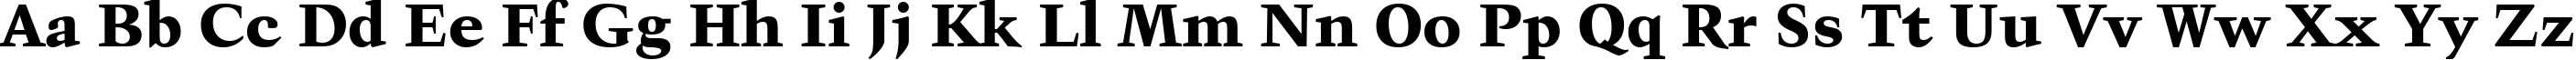 Пример написания английского алфавита шрифтом Kuenstler 480 Black BT